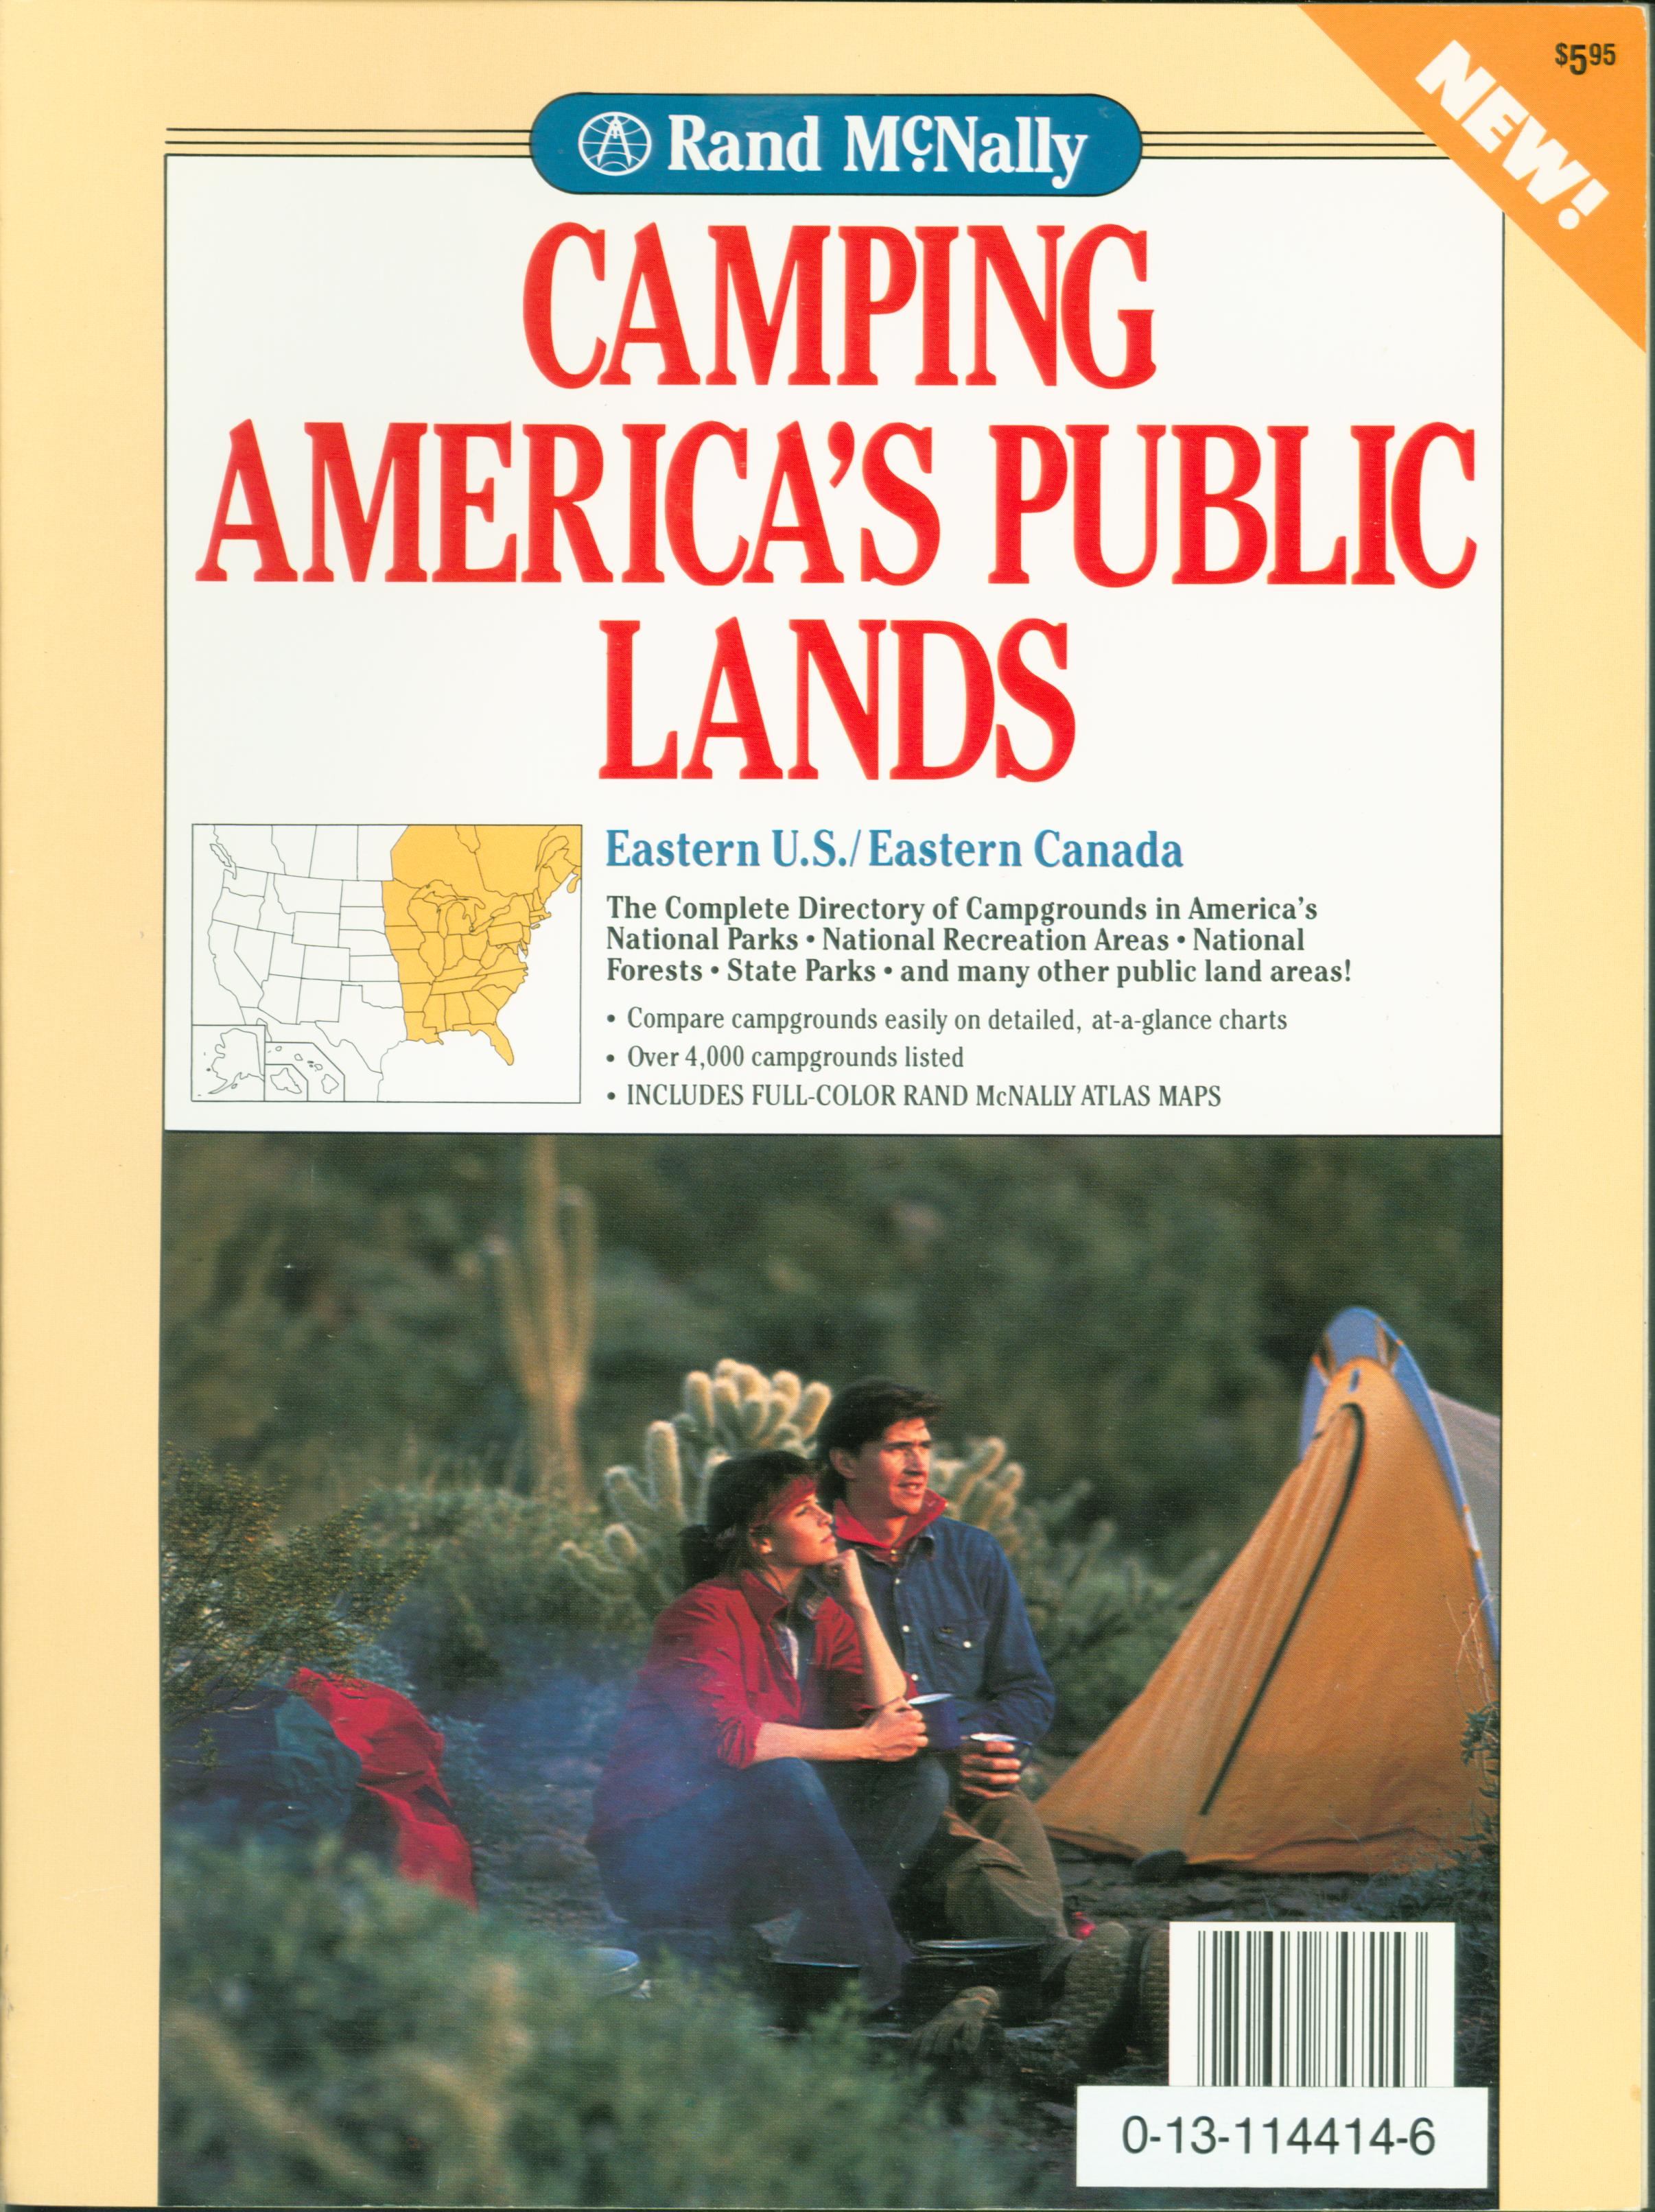 CAMPING AMERICA'S PUBLIC LANDS: Eastern U.S./Eastern Canada. 